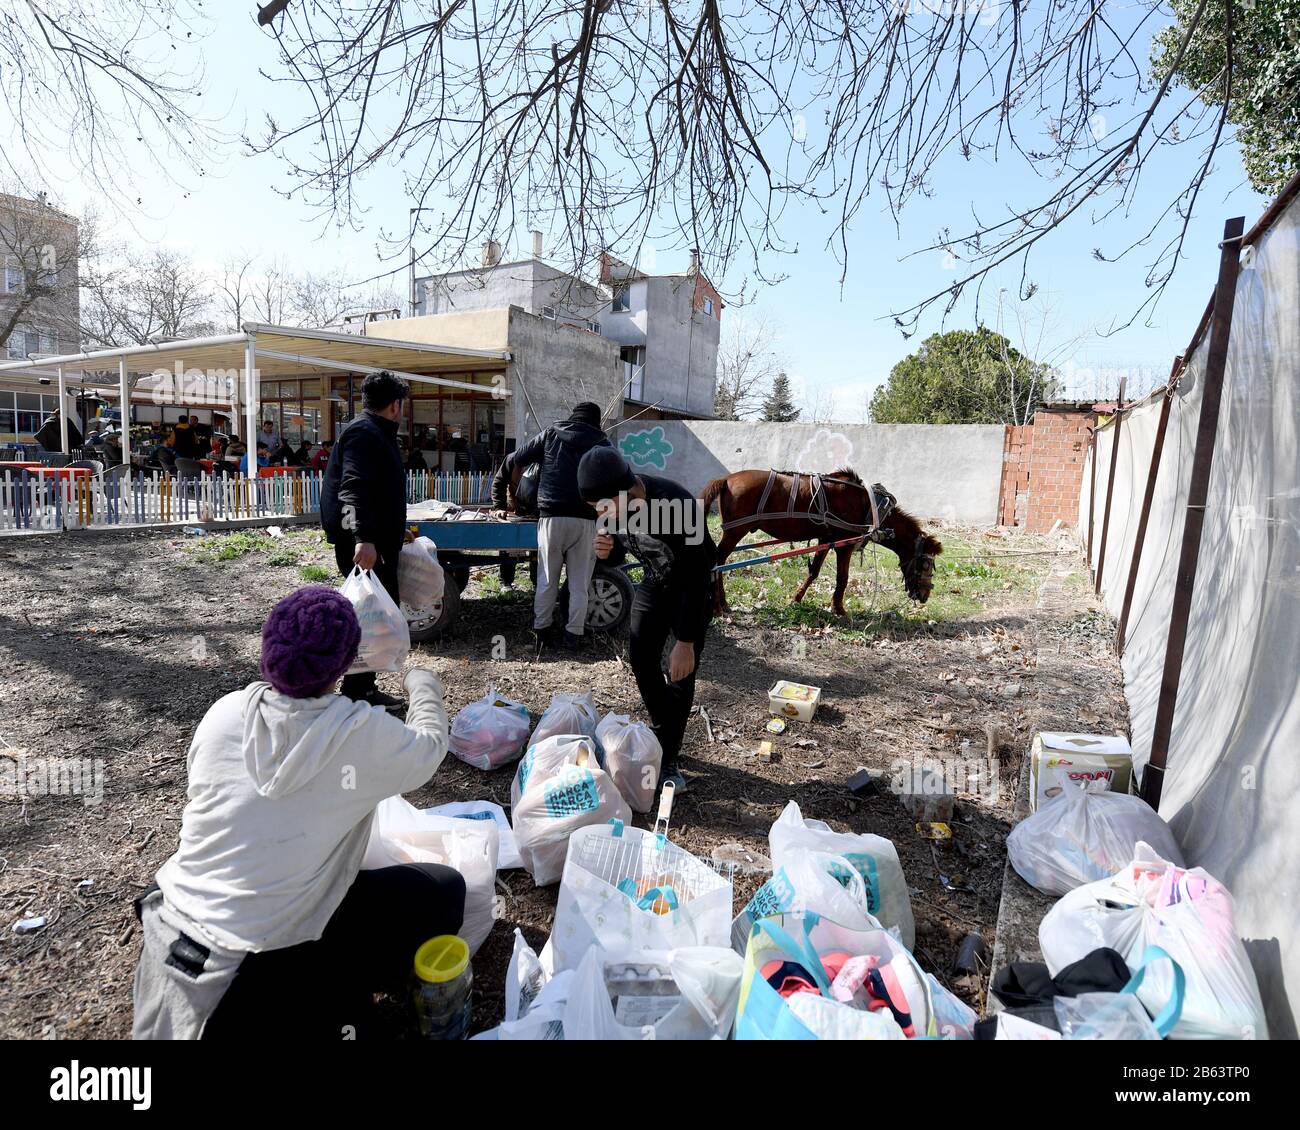 Eine Flüchtlingsfamilie packt ihre zerleppten Gegenstände auf einen Pferdewagen.Die humanitäre Krise in Edrine, der Türkei an der Grenze zu Griechenland, befindet sich derzeit in einem Patt, in dem etwa 6.000 Flüchtlinge in einem gezettelten Lager am Grenzübergangsort Pazakule verbleiben. Der lokale Supermarkt im nahe gelegenen Karaagac macht guten Handel mit der Roma-Zigeunergemeinschaft, die Pferdetaxifahrten für die 1 km lange Fahrt in die Stadt anbietet. Zahlreiche Pop-up-Stände entstehen als Bargeld der Einheimischen für diese neue gefundene Wirtschaft. Die griechische Grenzkontrolle reißt die meisten Tage noch Gas, aber die Zahl der versuchten Übergänge ist geringer. Neue Arriva Stockfoto